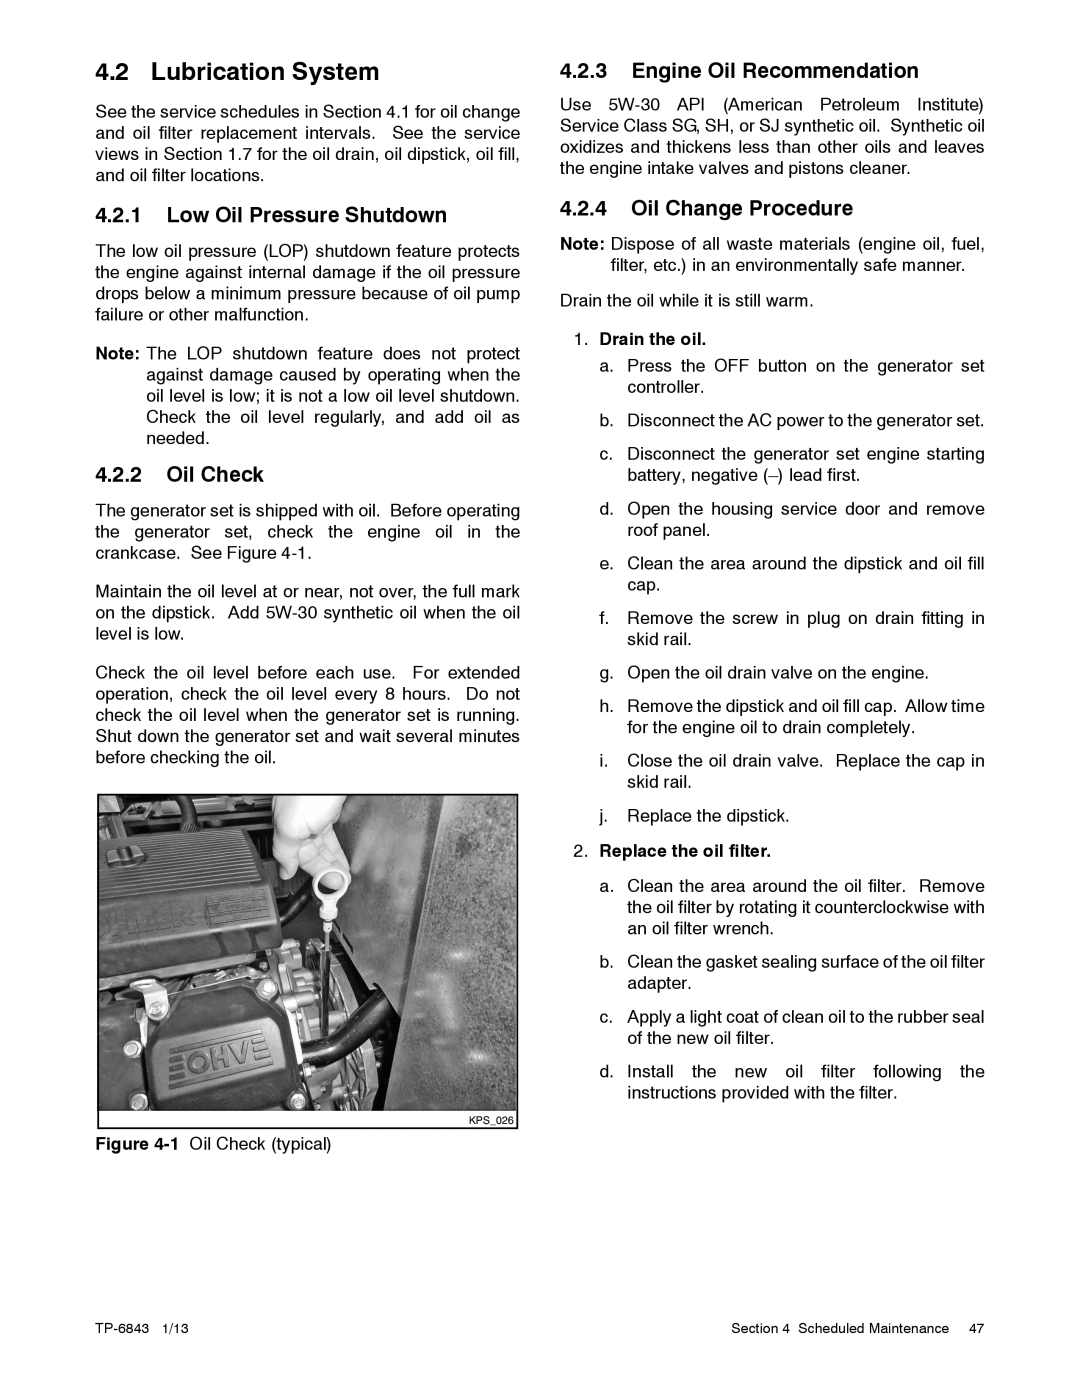 Kohler 48VDC, 6VSG manual Lubrication System, 4.2.1Low Oil Pressure Shutdown, 4.2.2Oil Check, 4.2.3Engine Oil Recommendation 